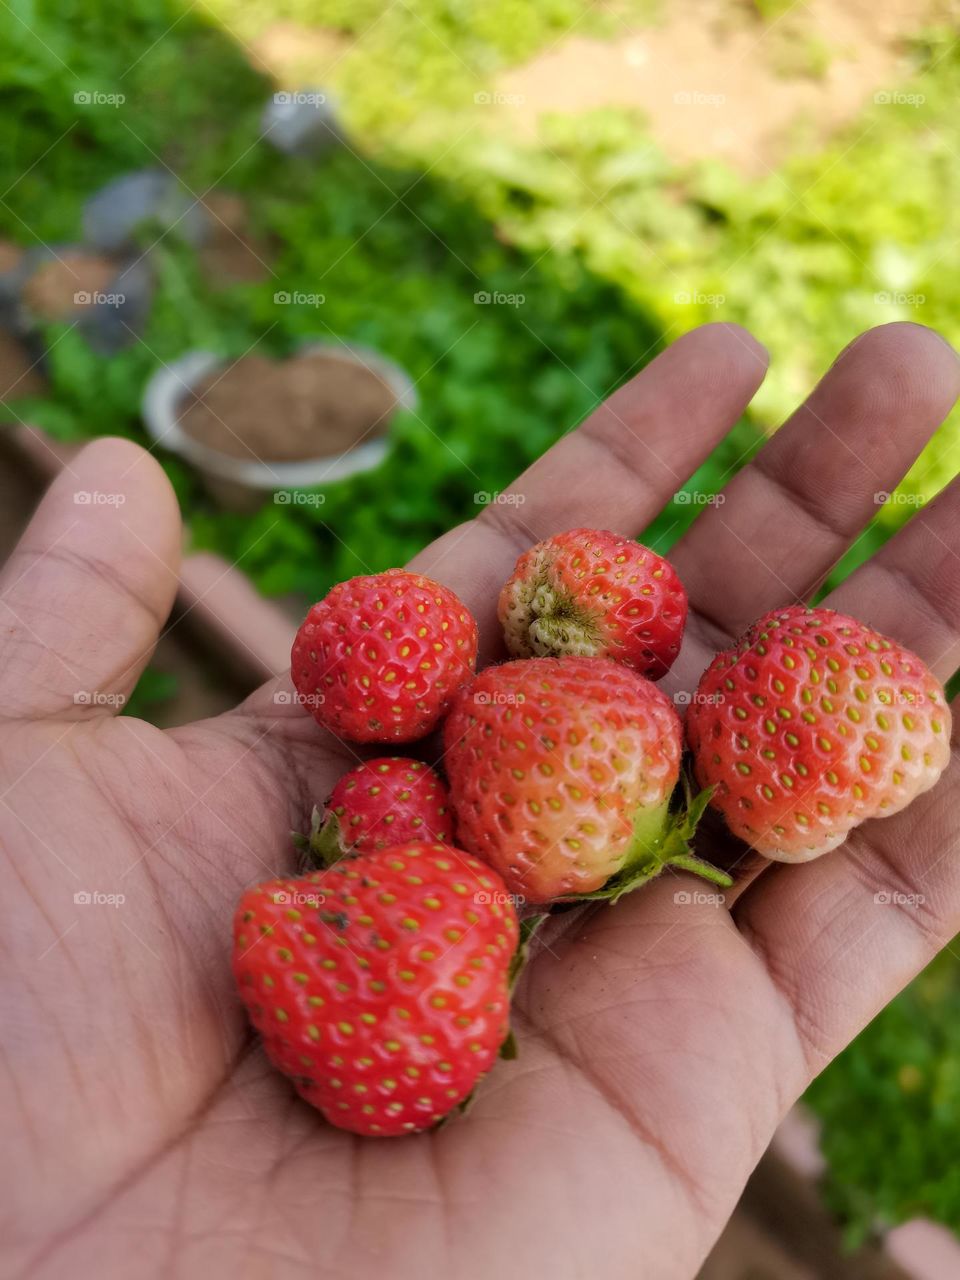 Fresh Strawberry from my garden. Nuwaraeliya, sri lanka